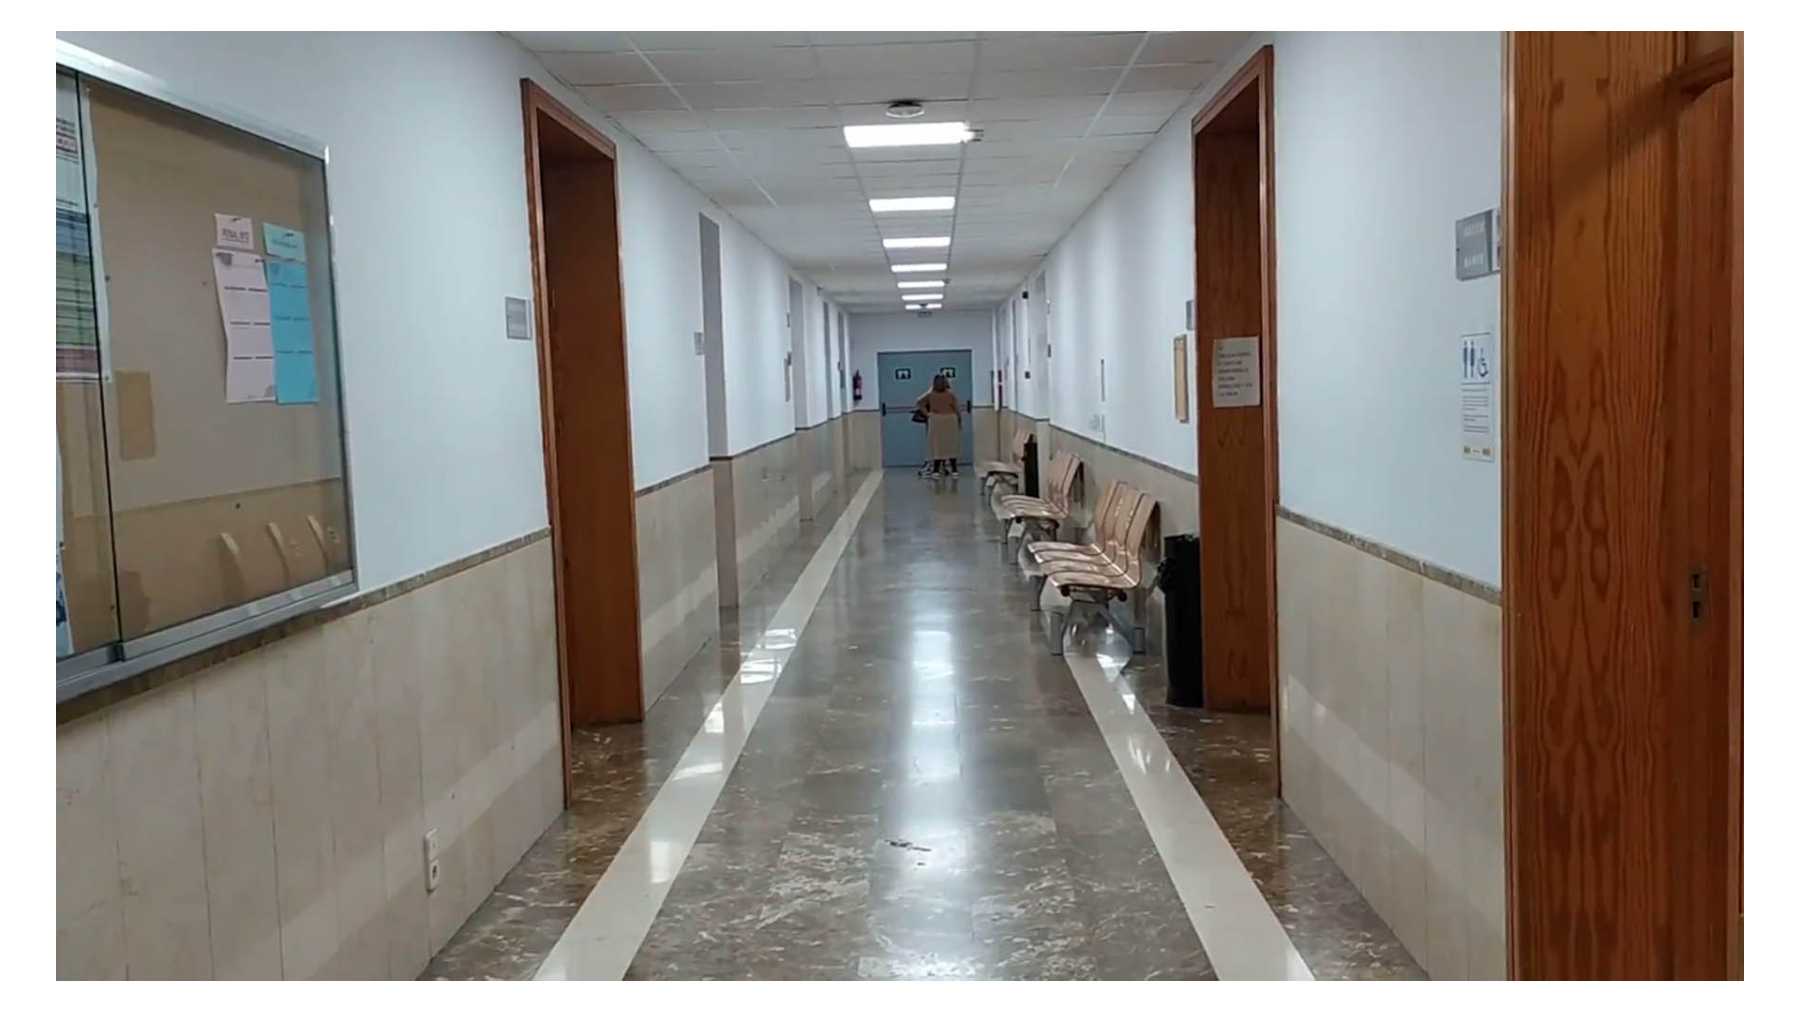 Los pasillos de los juzgados de Palma habitualmente llenos de gente y hoy vacíos.